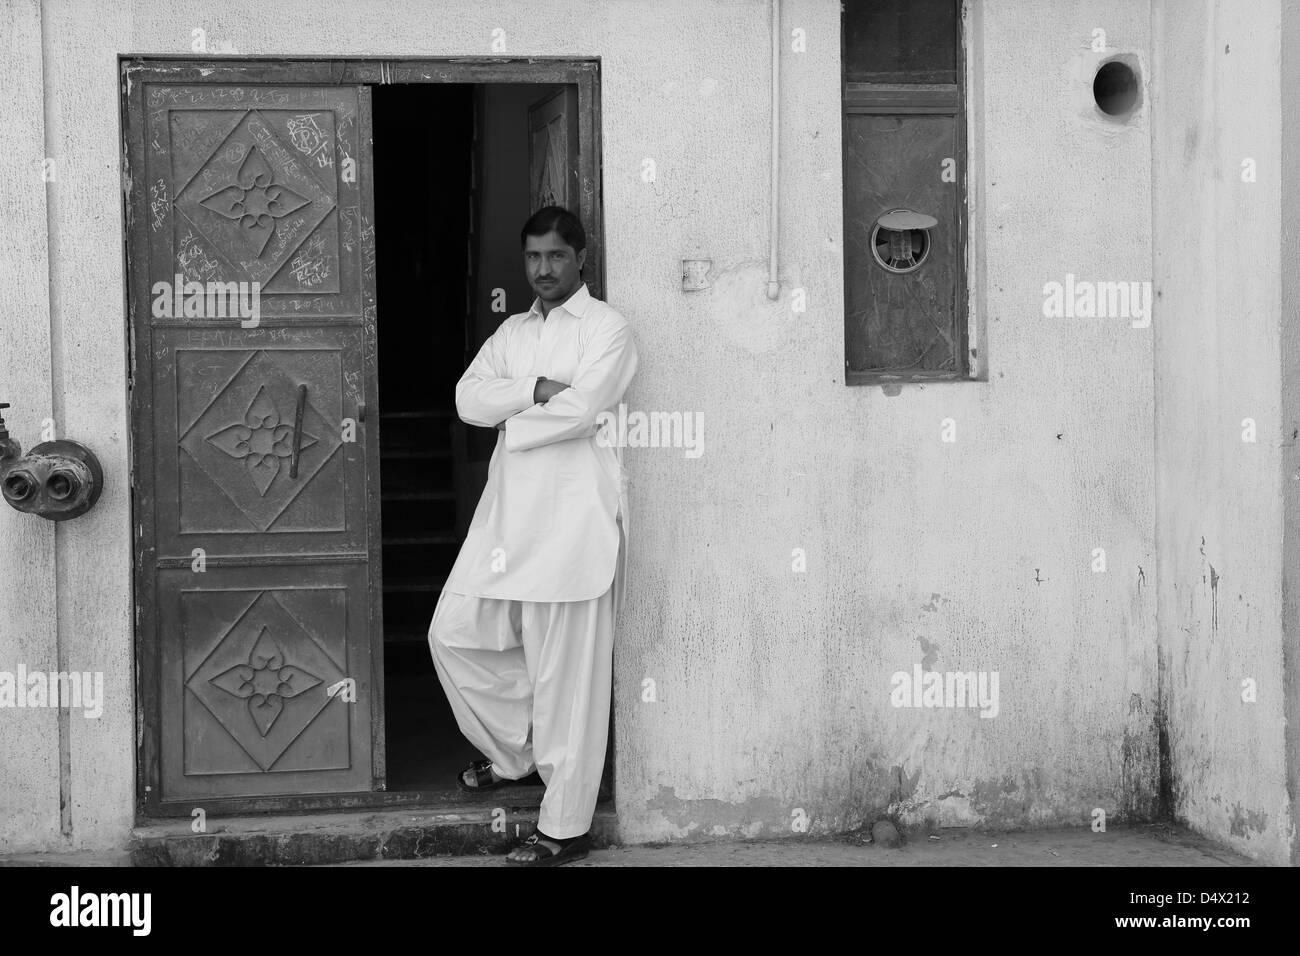 Portrait de shop owner standing in doorway, Dubaï, Émirats Arabes Unis Banque D'Images